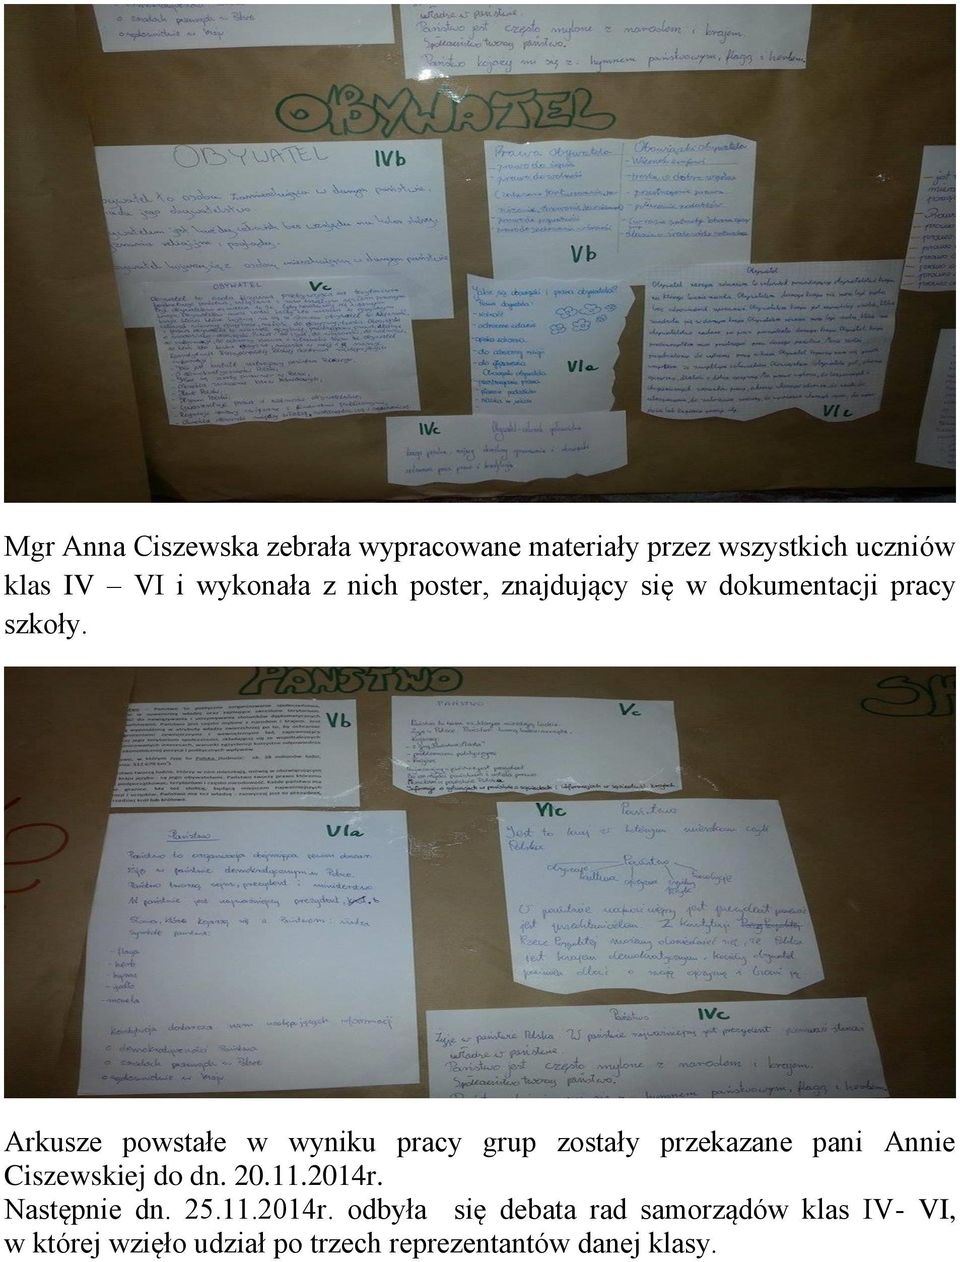 Arkusze powstałe w wyniku pracy grup zostały przekazane pani Annie Ciszewskiej do dn. 20.11.